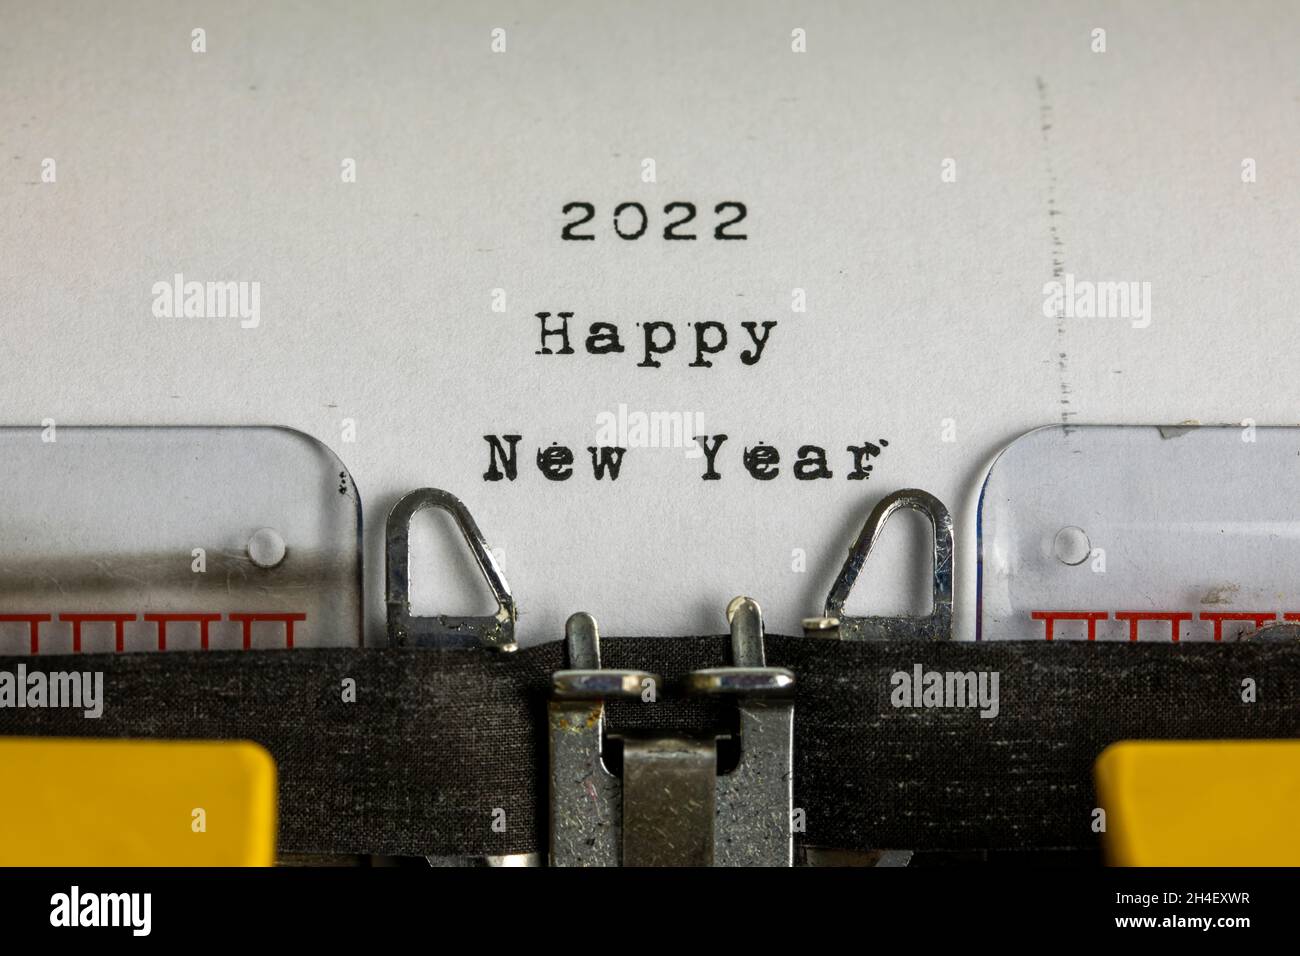 Feliz Año Nuevo 2022 Escrito en una máquina de escribir vieja Foto de stock